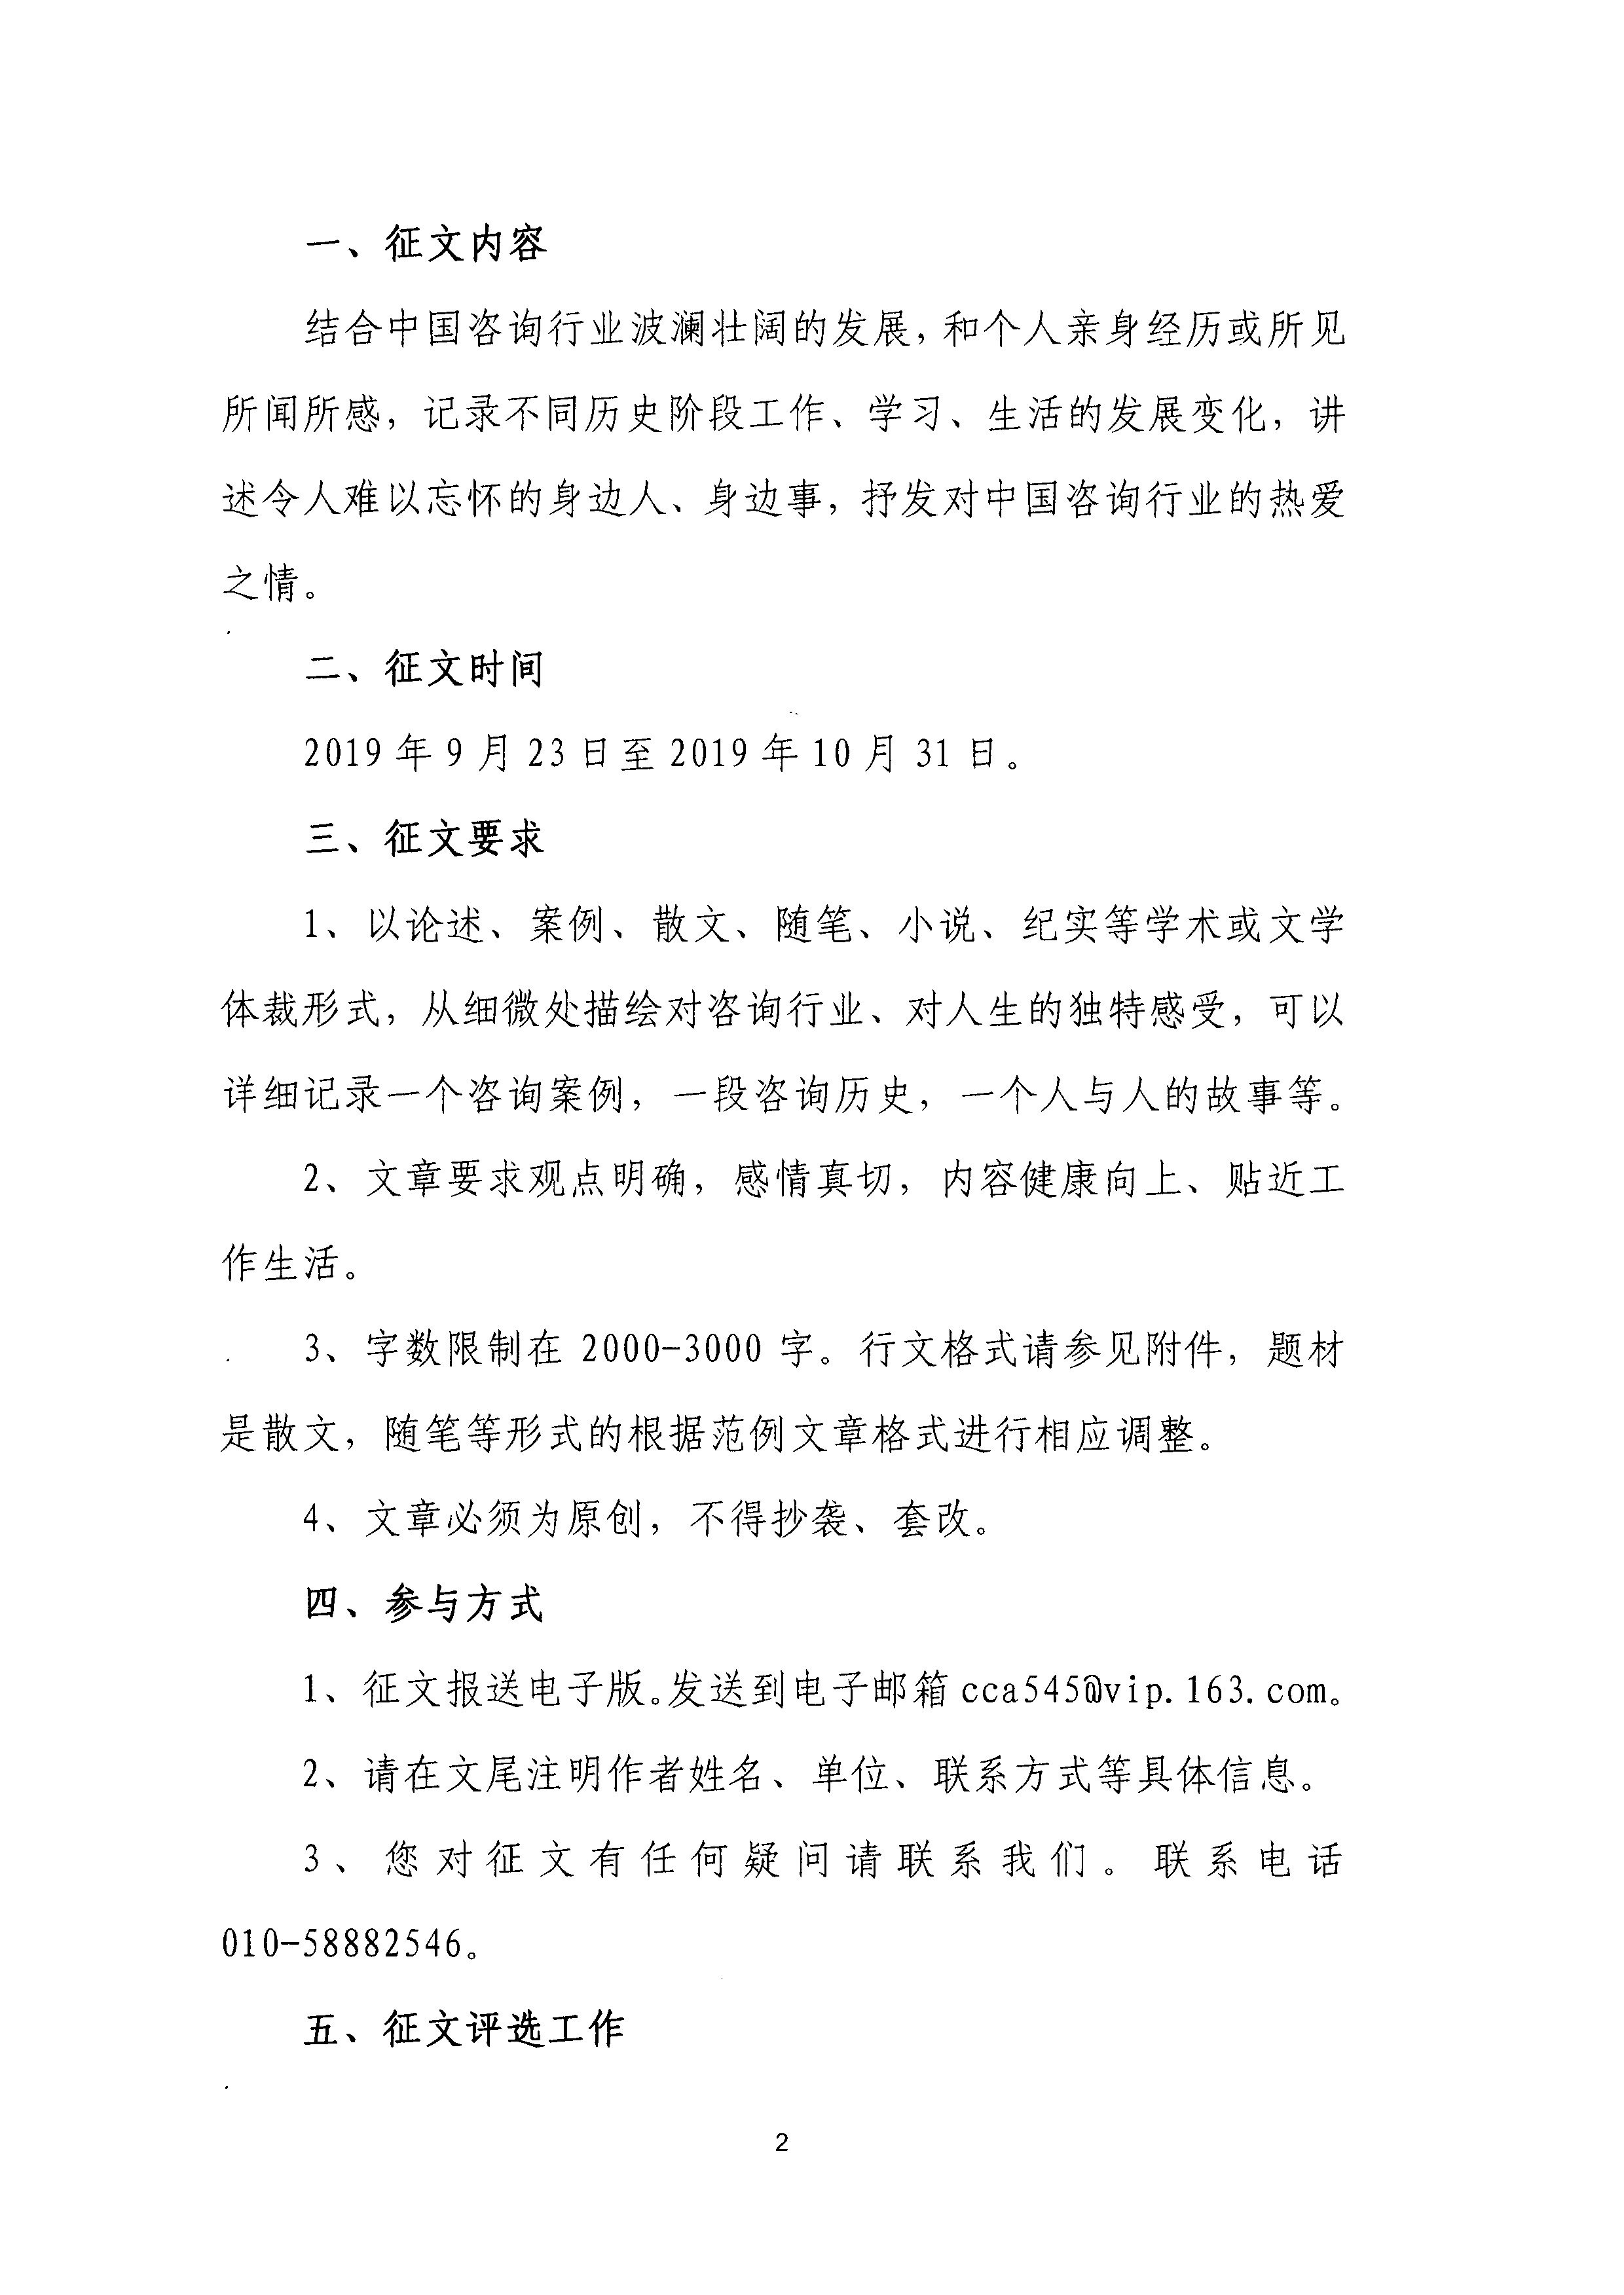 纪念中华人民共和国70周年咨询征文活动的通知_页面_2.jpg